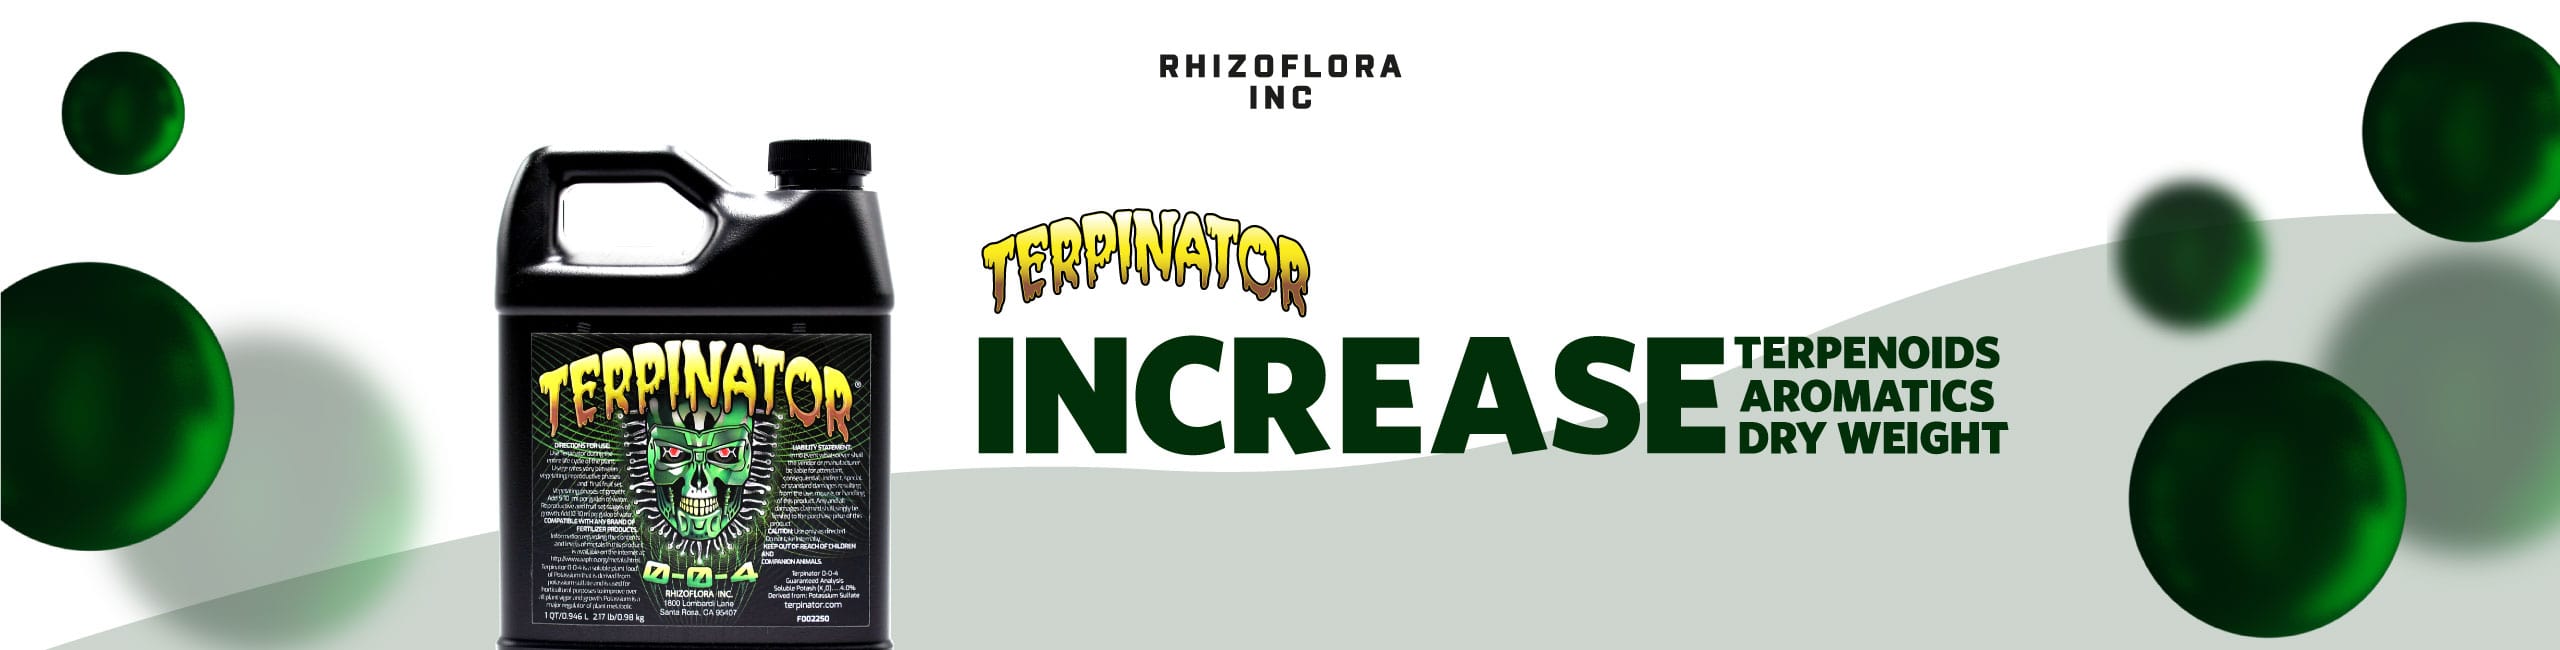 Terpinator Increase Terpinoids Aromatics Dry Weight